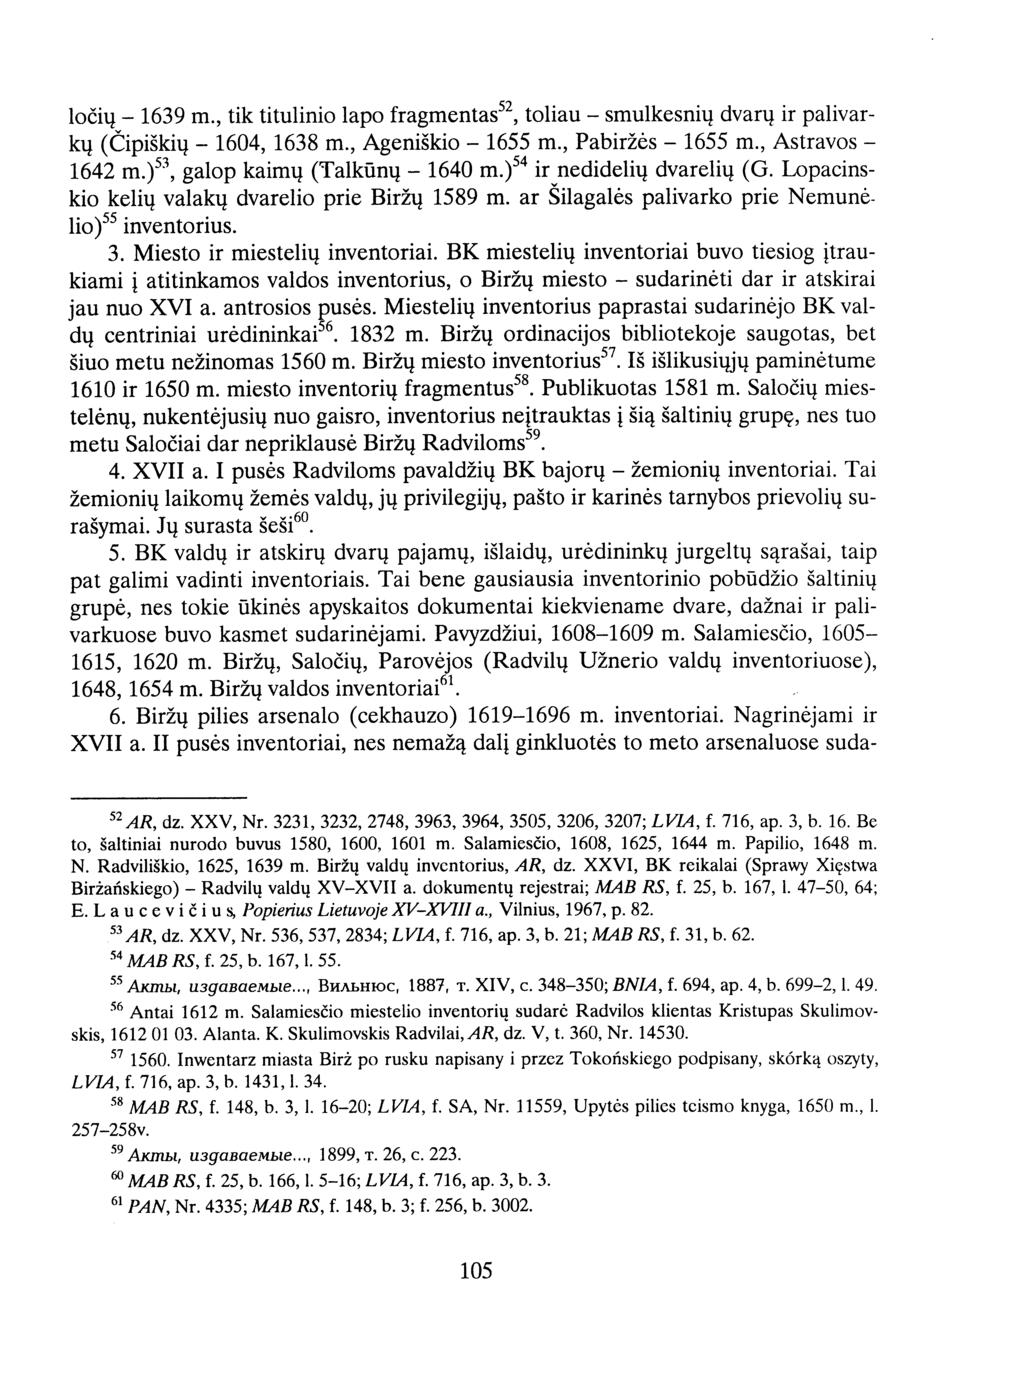 lo6iu -1639 in., tik titulinio lapo fragmentas52, toliau -smulkesniu dvaru ir palivarku (Cipi5kiu -1604, 1638 in., Ageni5kio -1655 in., Pabirz6s -1655 in., Astravos - 1642 in.